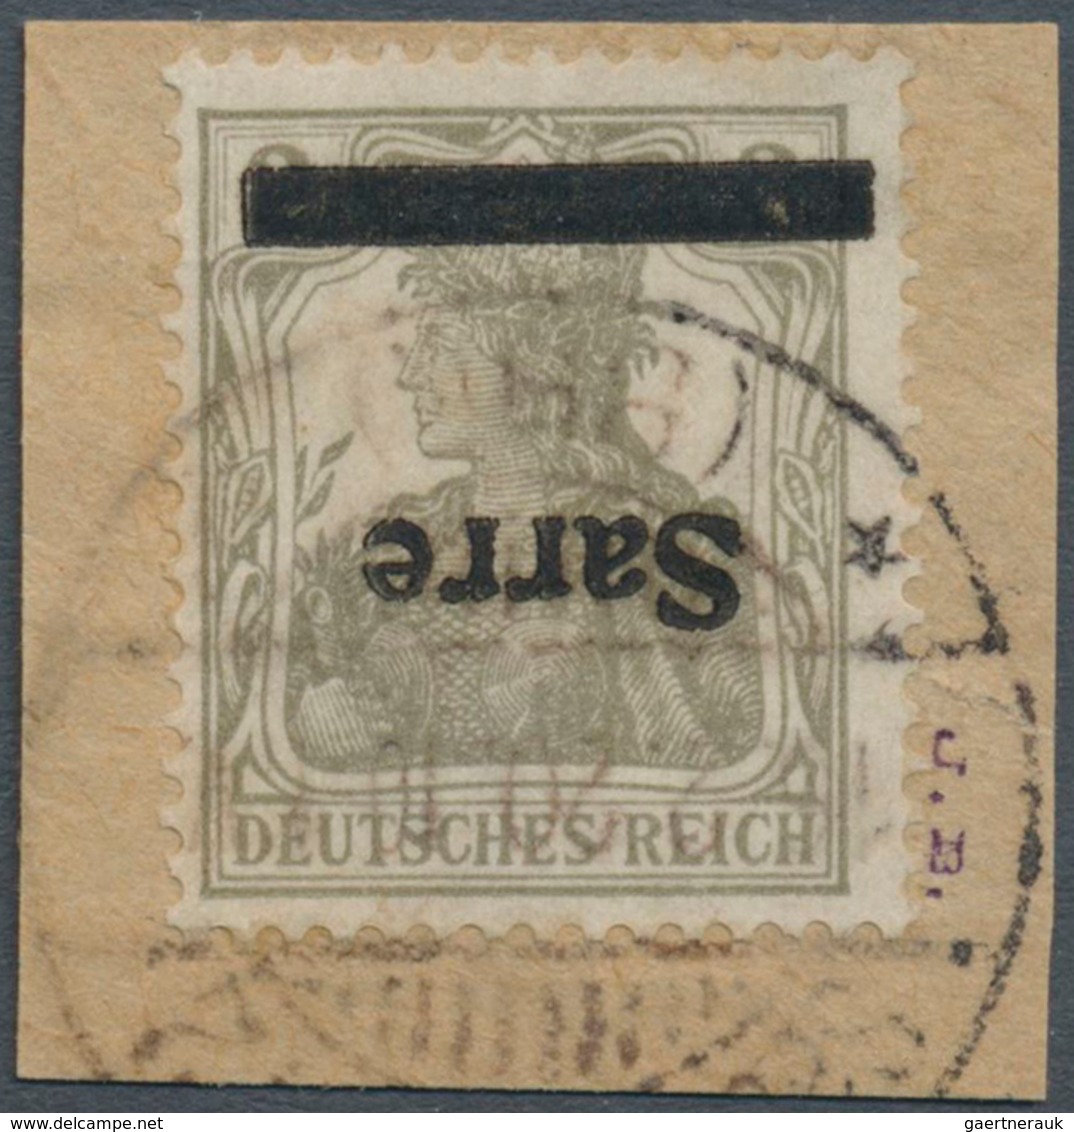 Deutsche Abstimmungsgebiete: Saargebiet: 1920; Germania 2 Pf. Mit Kopfstehendem Aufdruck Auf Briefst - Unused Stamps